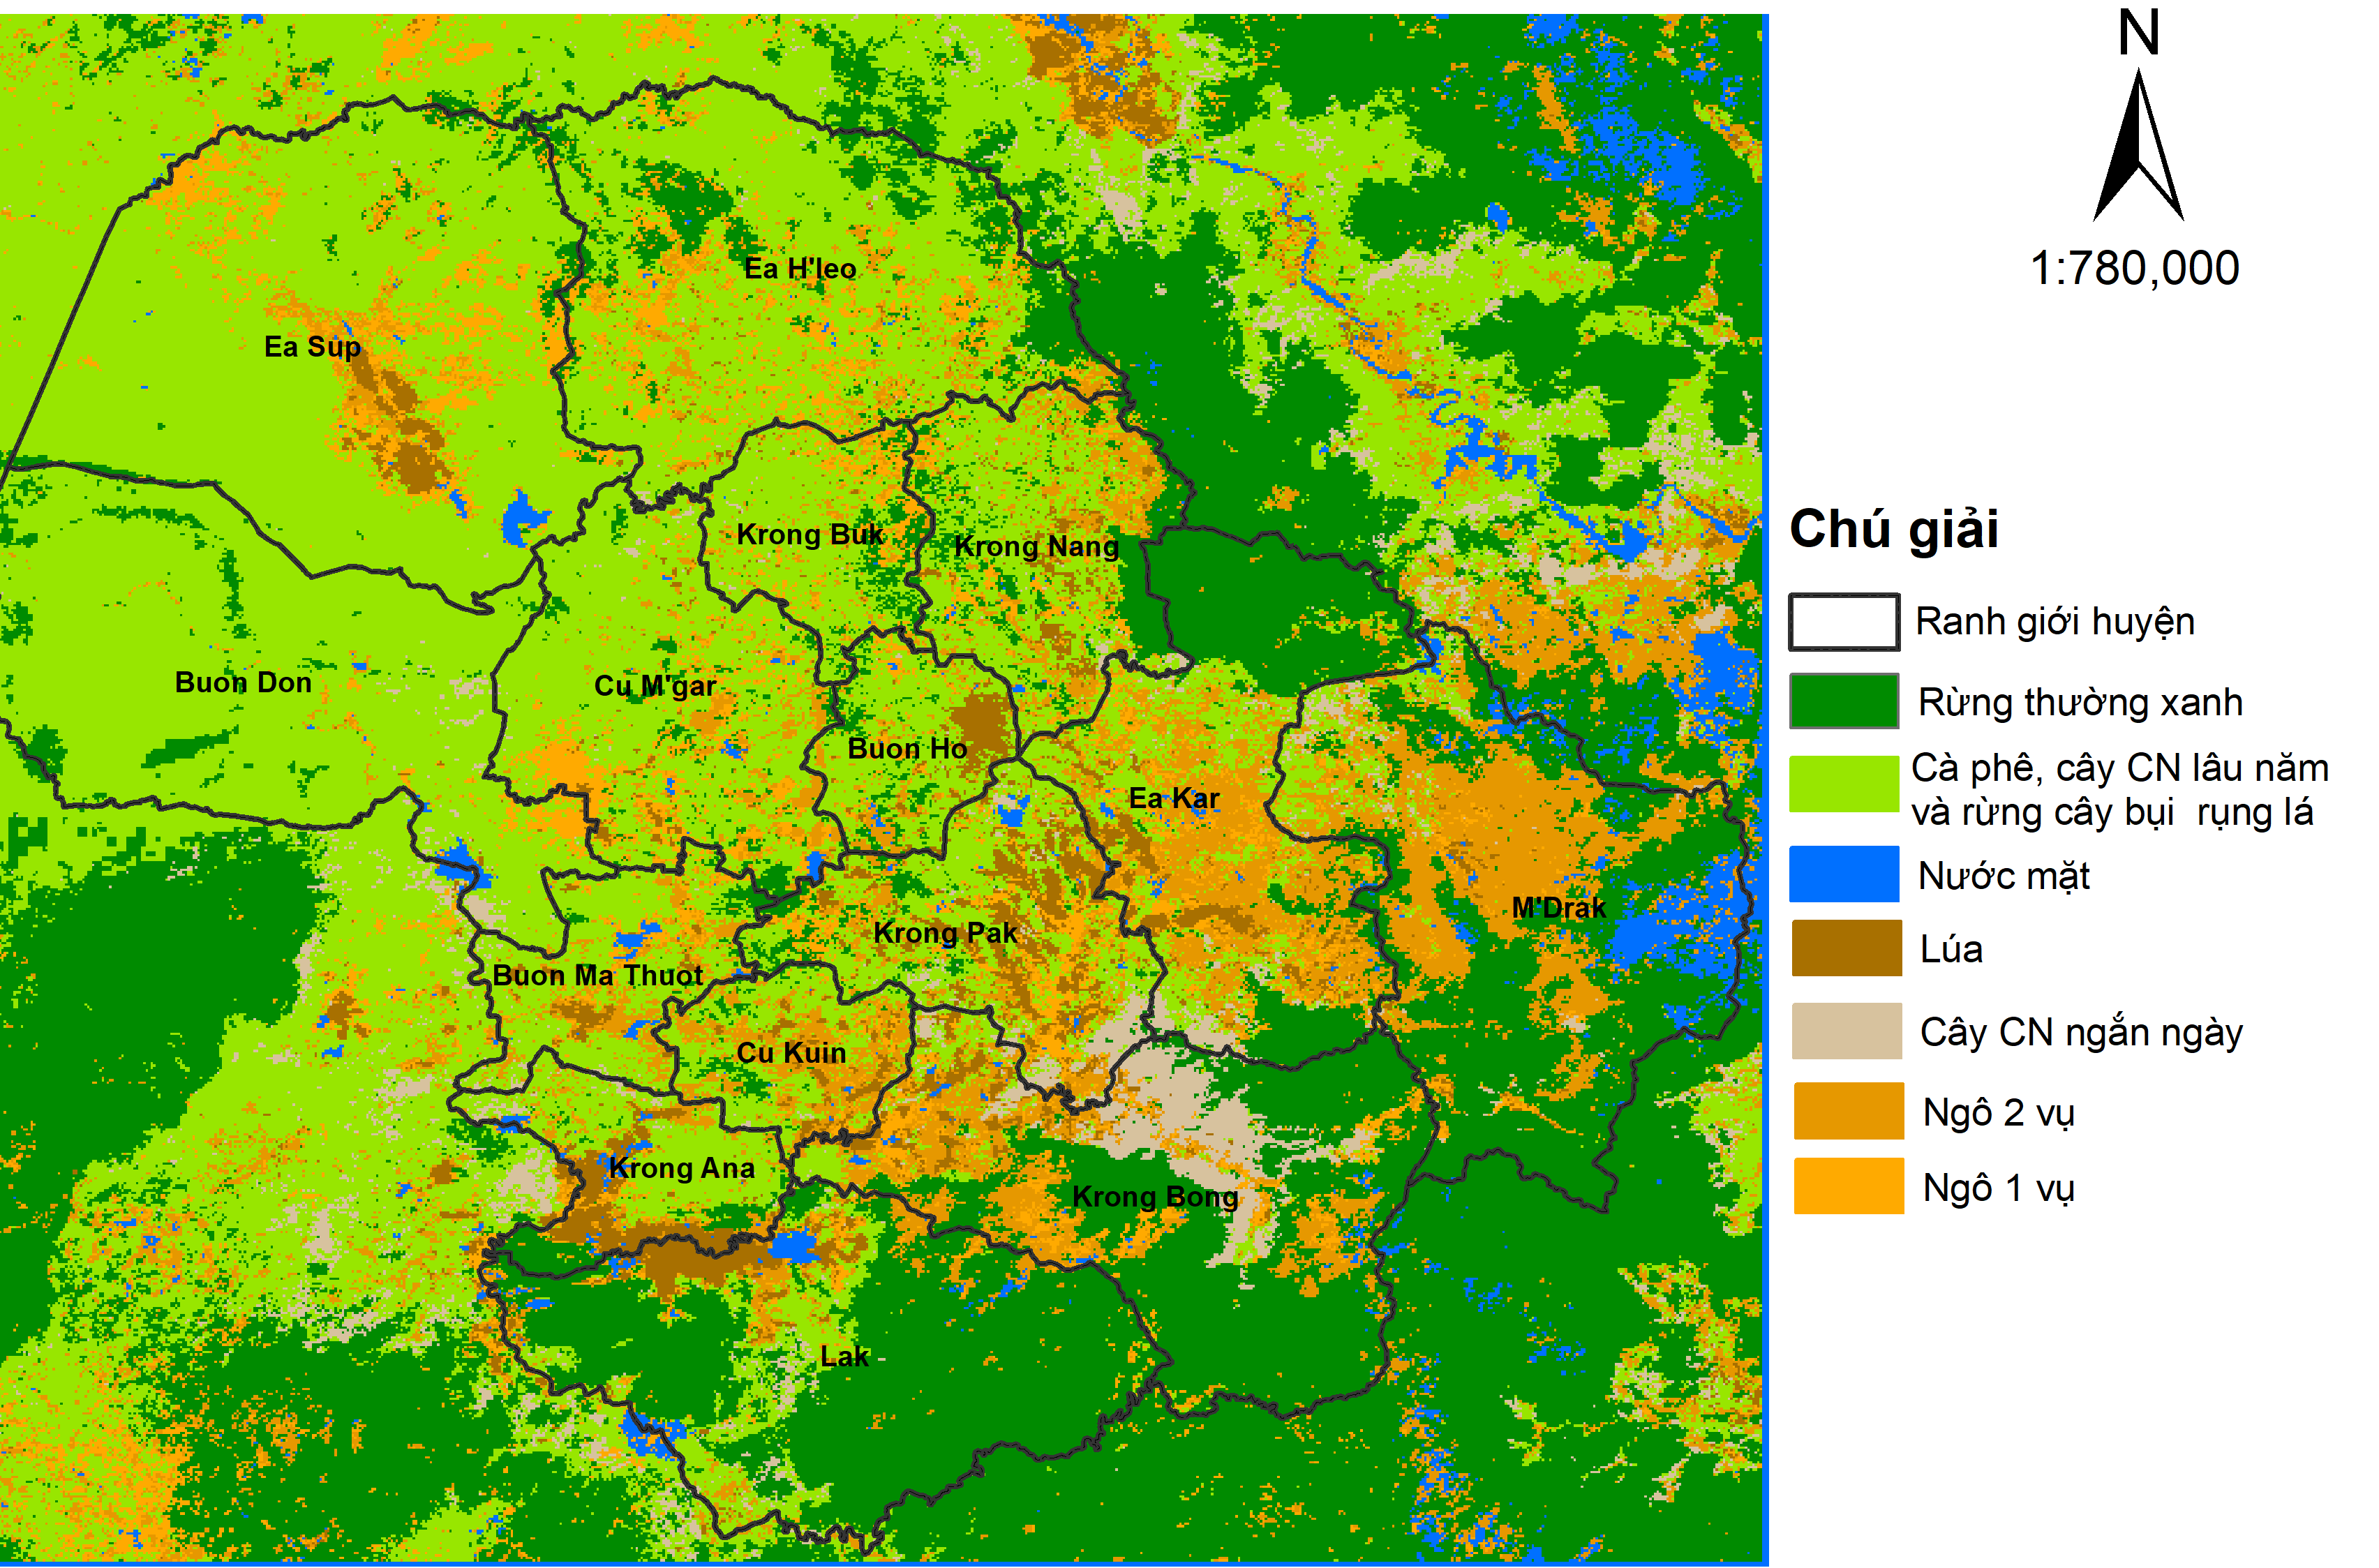 Hiện trạng phân bố vùng trồng ngô và một số cây trồng khác tại Đắk Lắk năm 2019 dựa trên dữ liệu ảnh vệ tinh. Nguồn: nhóm nghiên cứu cung cấp